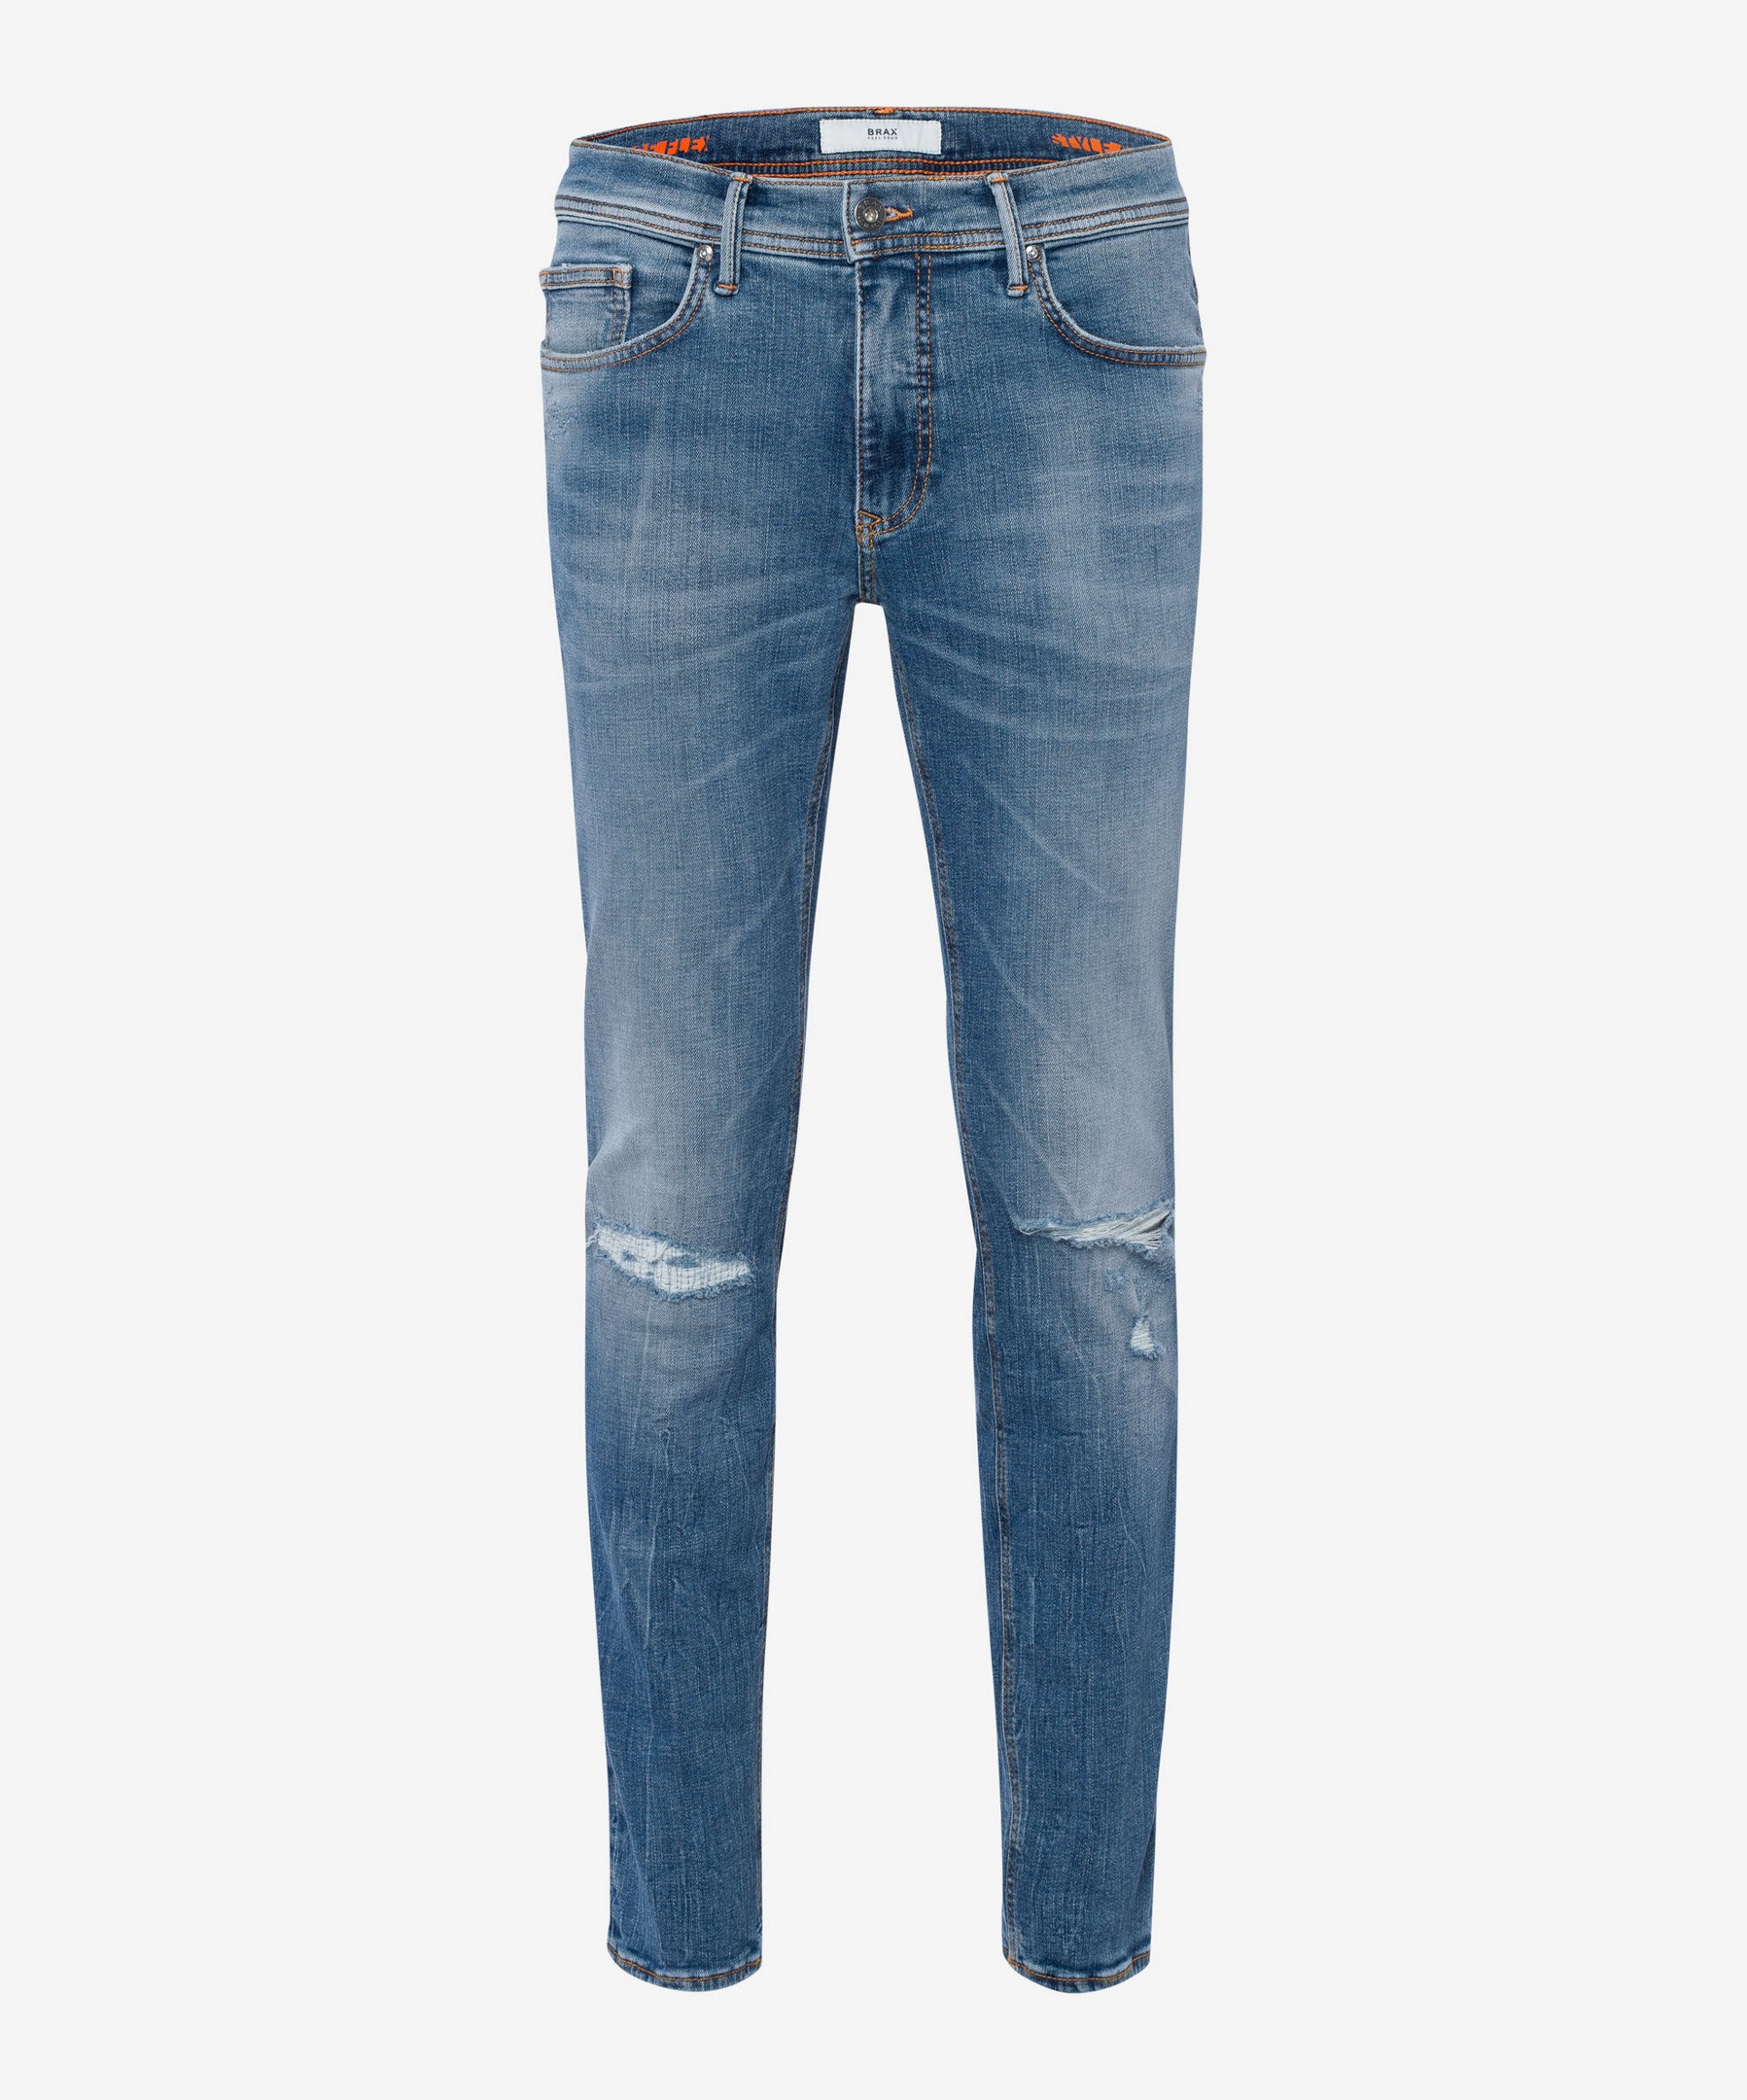 Brax Chris 5-Pocket Vintage Denim Hi-Flex Superstretch Blue Planet Jeans  Blue Indigo Destroyed | Jan Rozing Men's Fashion